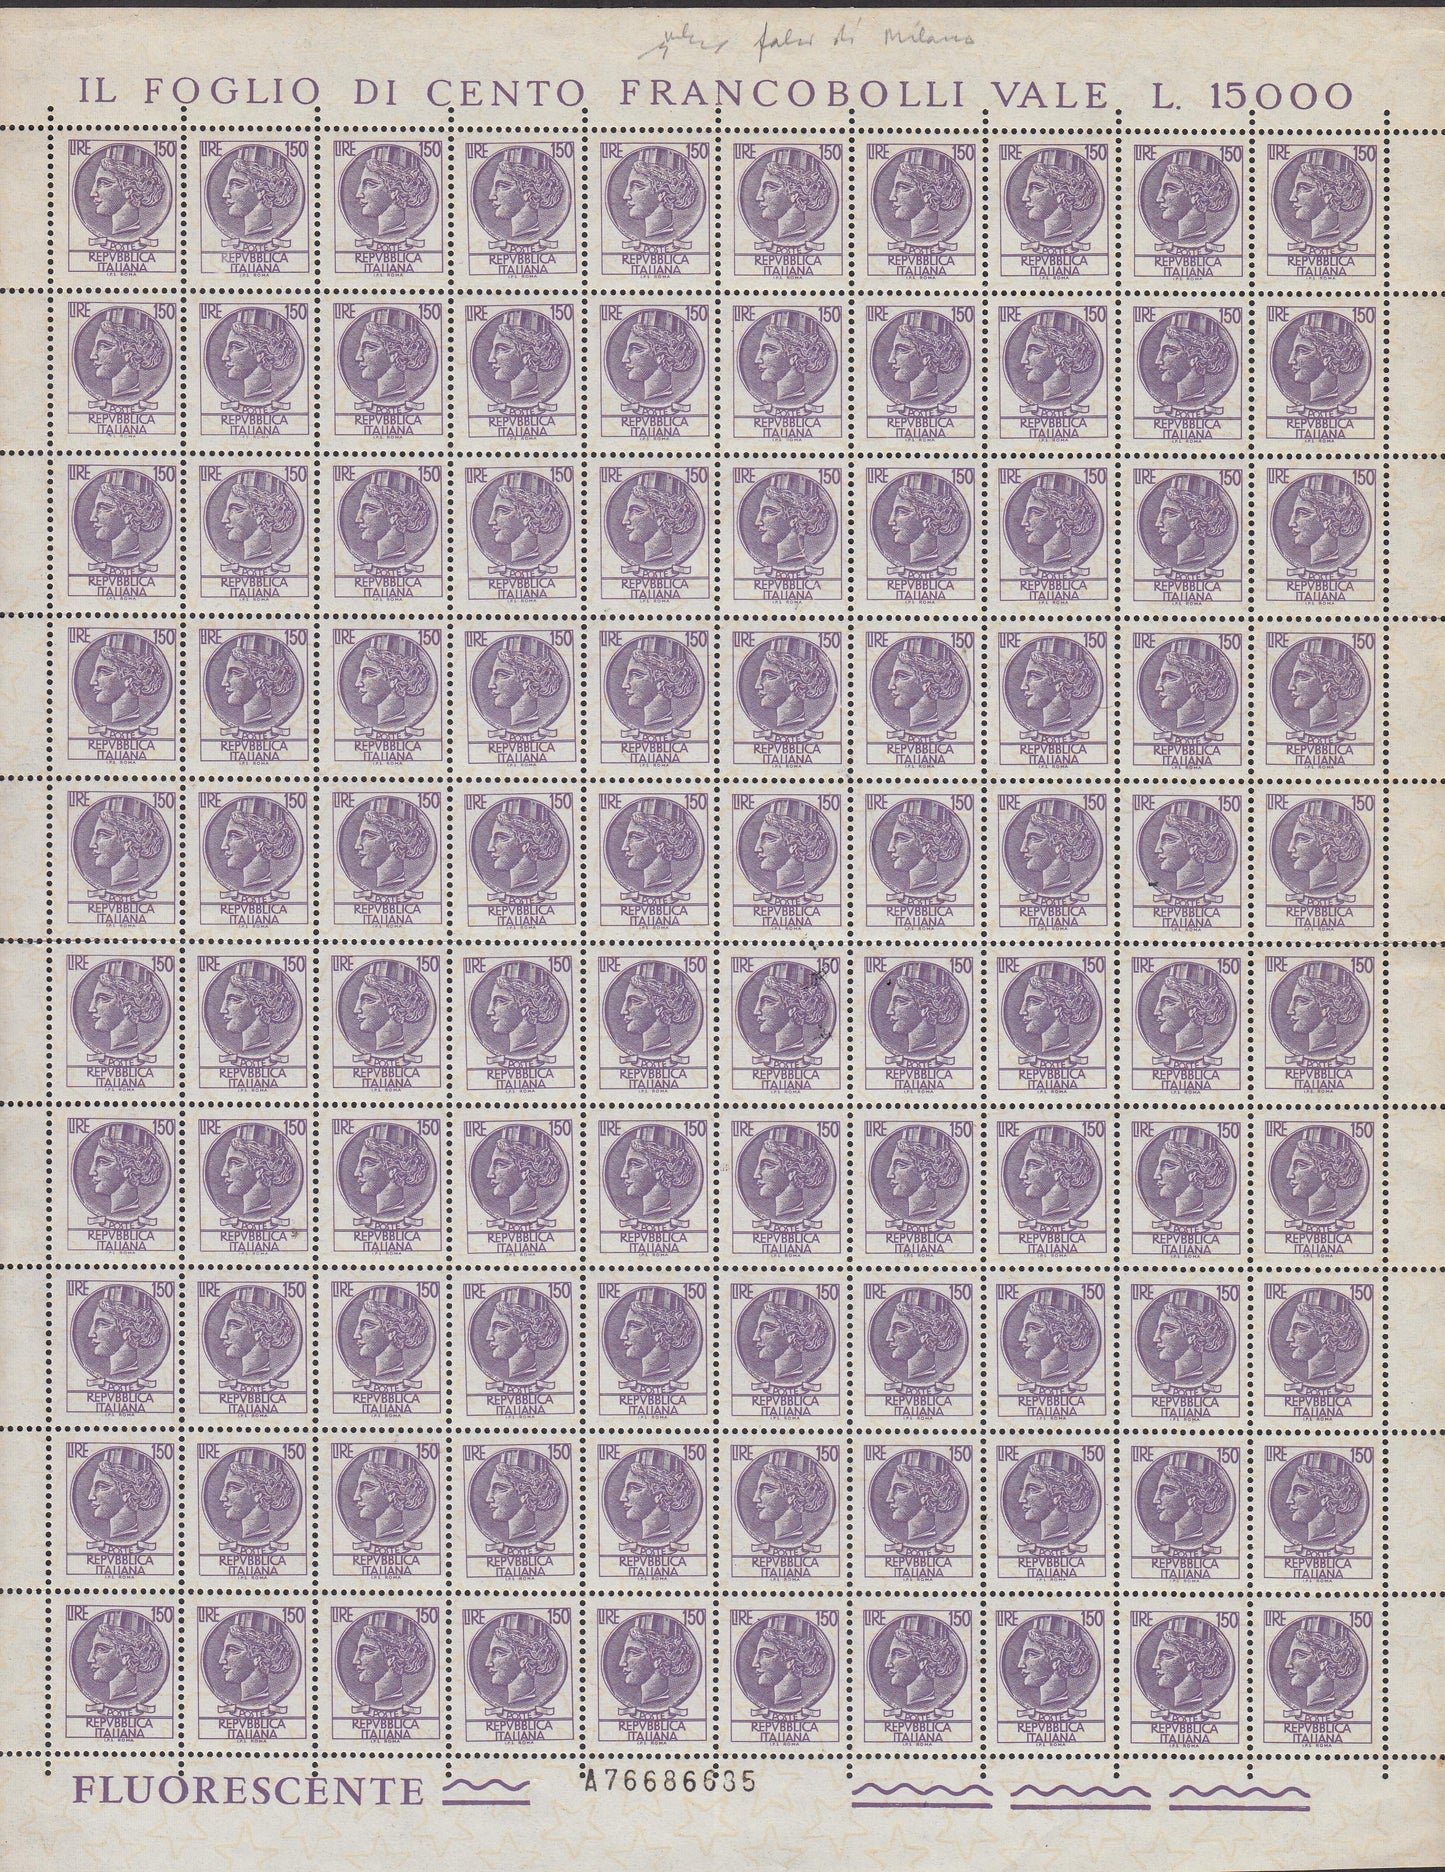 PP661 - Falso per servire della Siracusana, L.150 violetto malva, foglio completo di 100 esemplari.